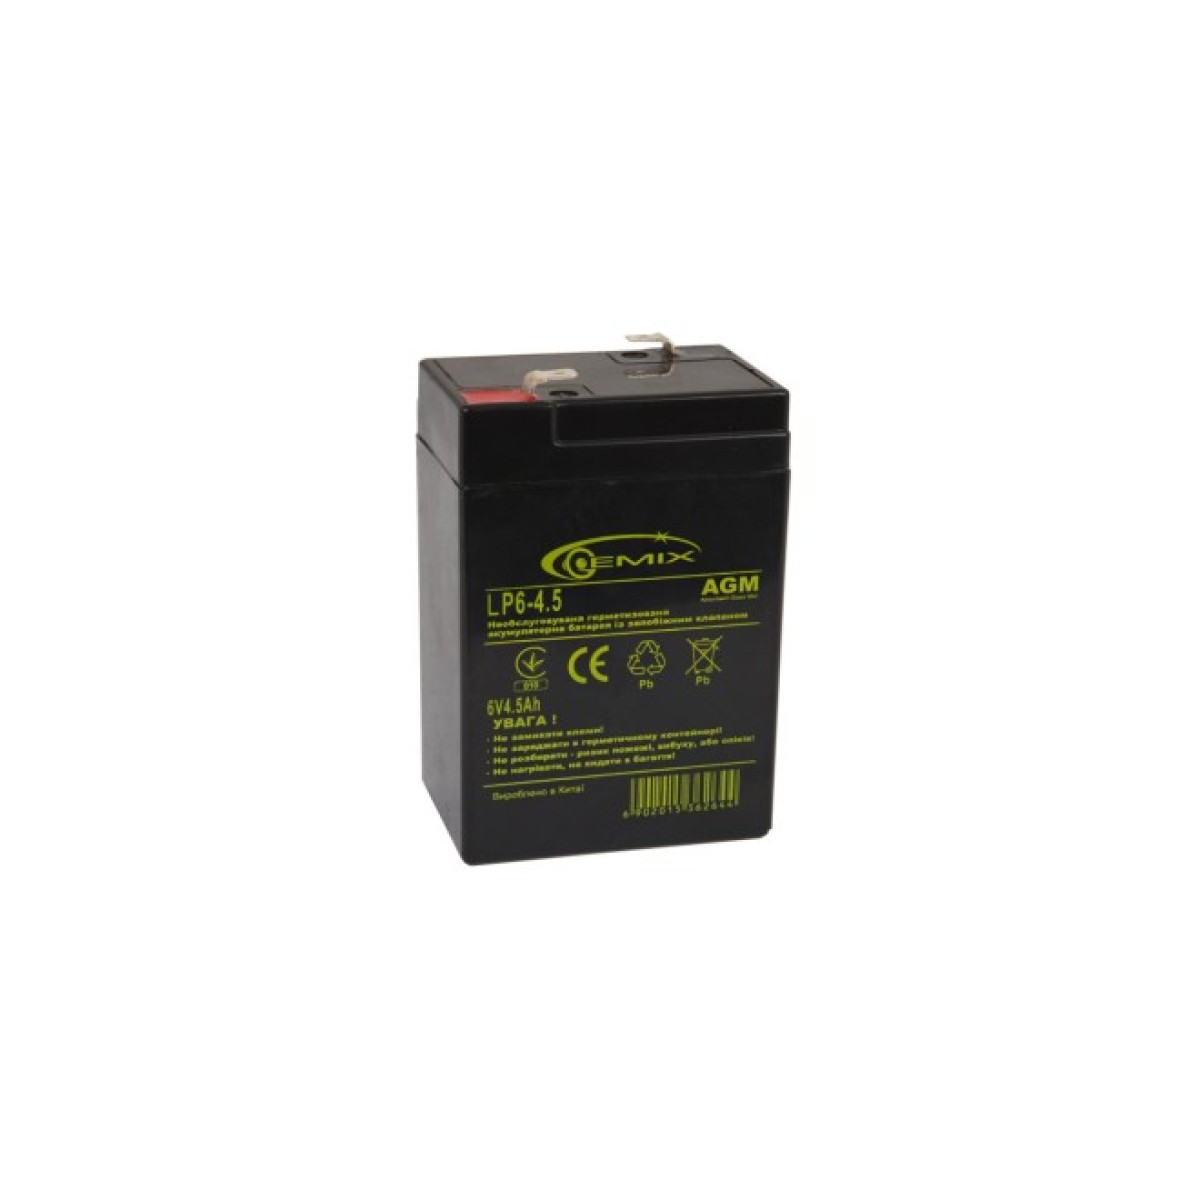 Батарея к ИБП Gemix 6В 4.5 Ач (LP6-4.5 Т2) 98_98.jpg